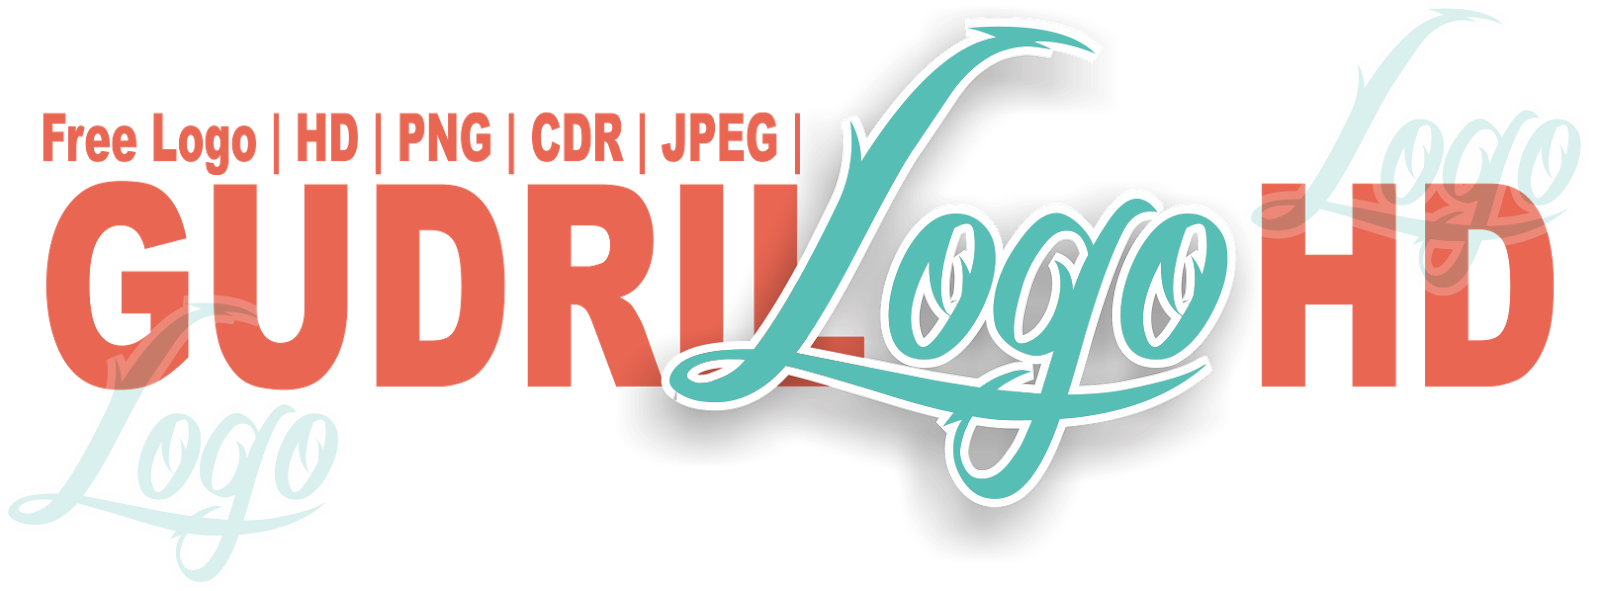 Download Logo Puskesmas CDR PNG HD | GUDRIL LOGO | Tempat-nya Download